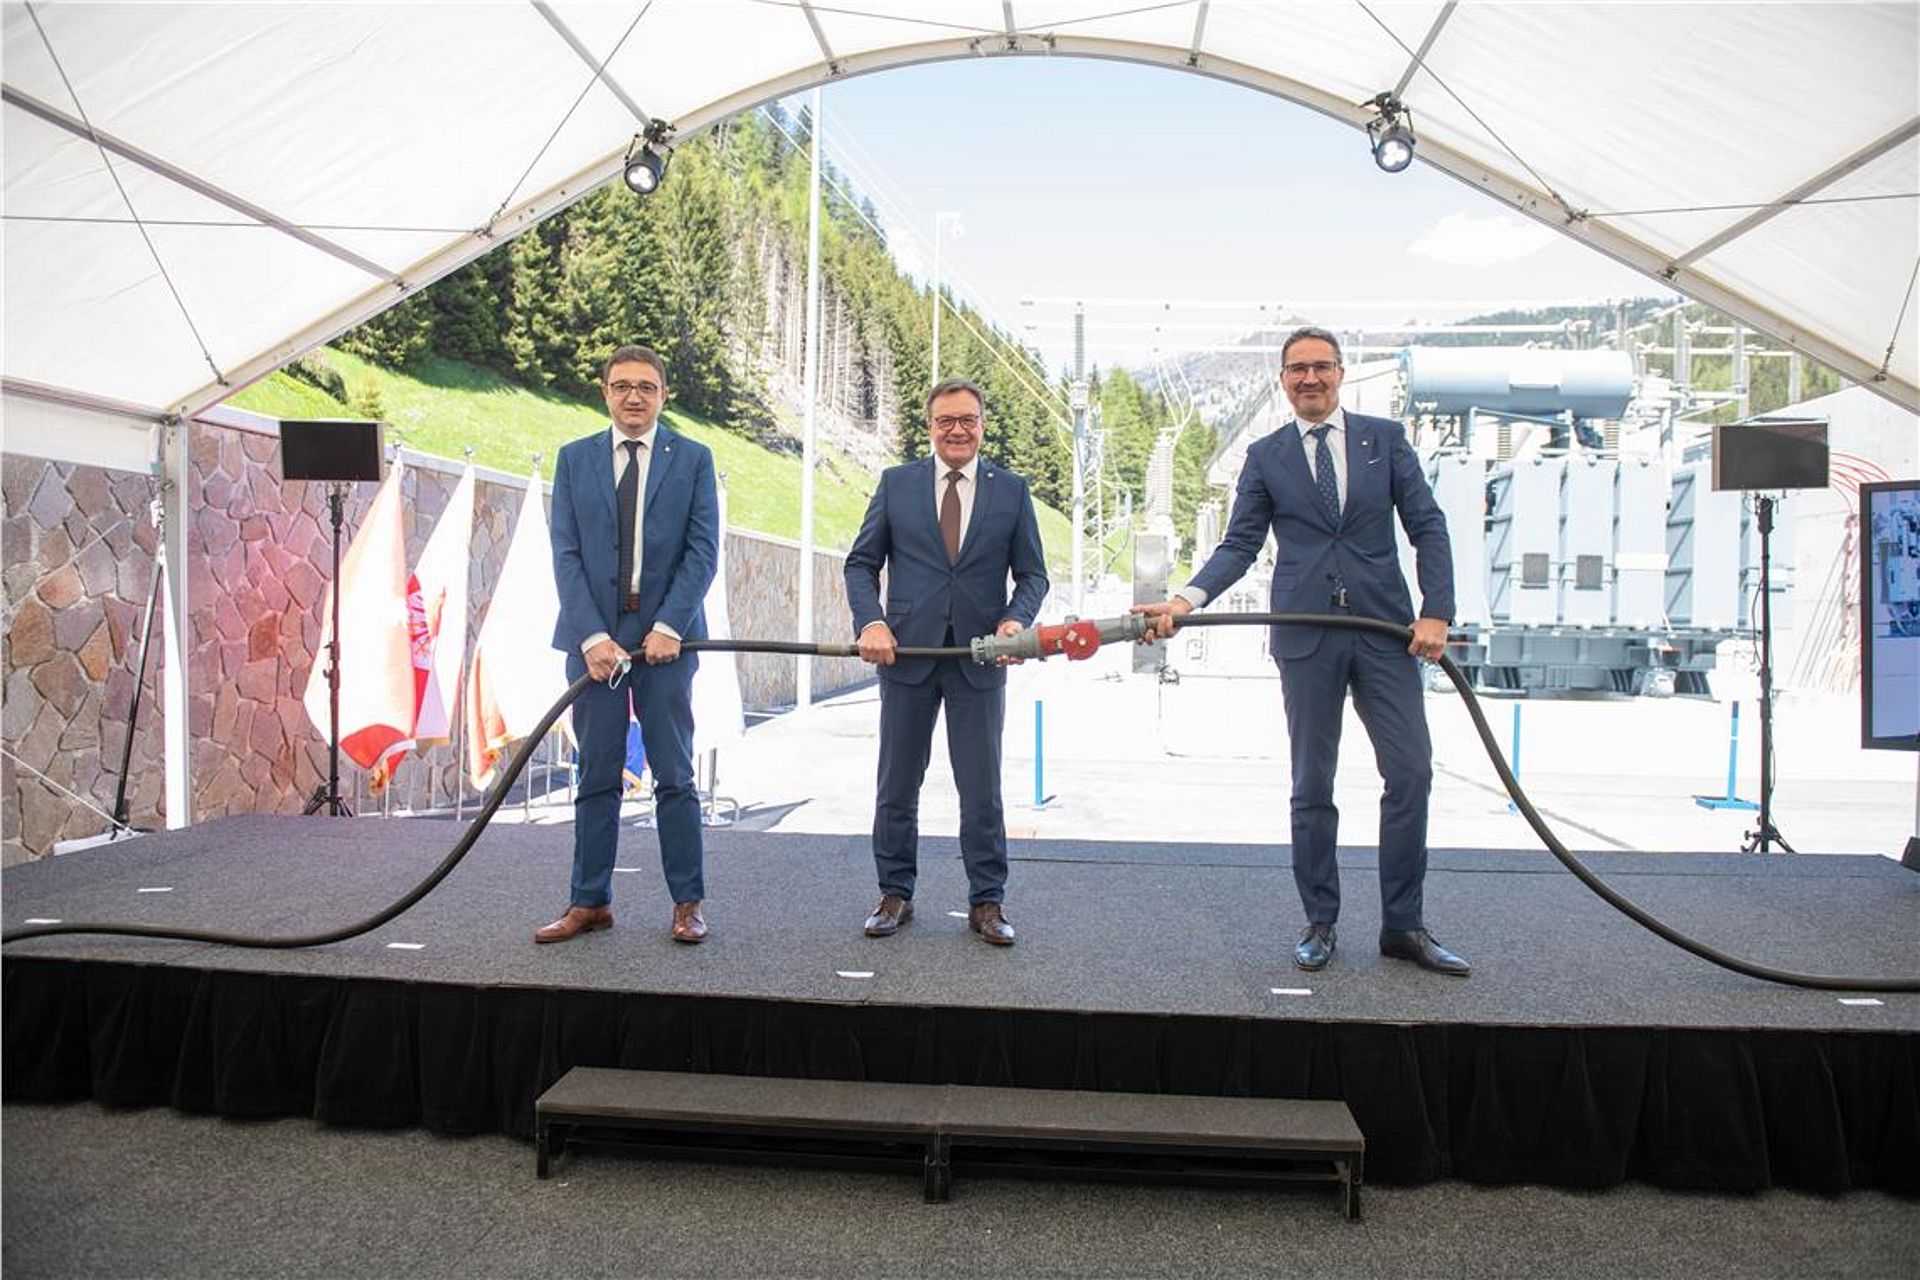 La simbolica interconnessione transfrontaliera il 1 giugno 2021 al Brennero.